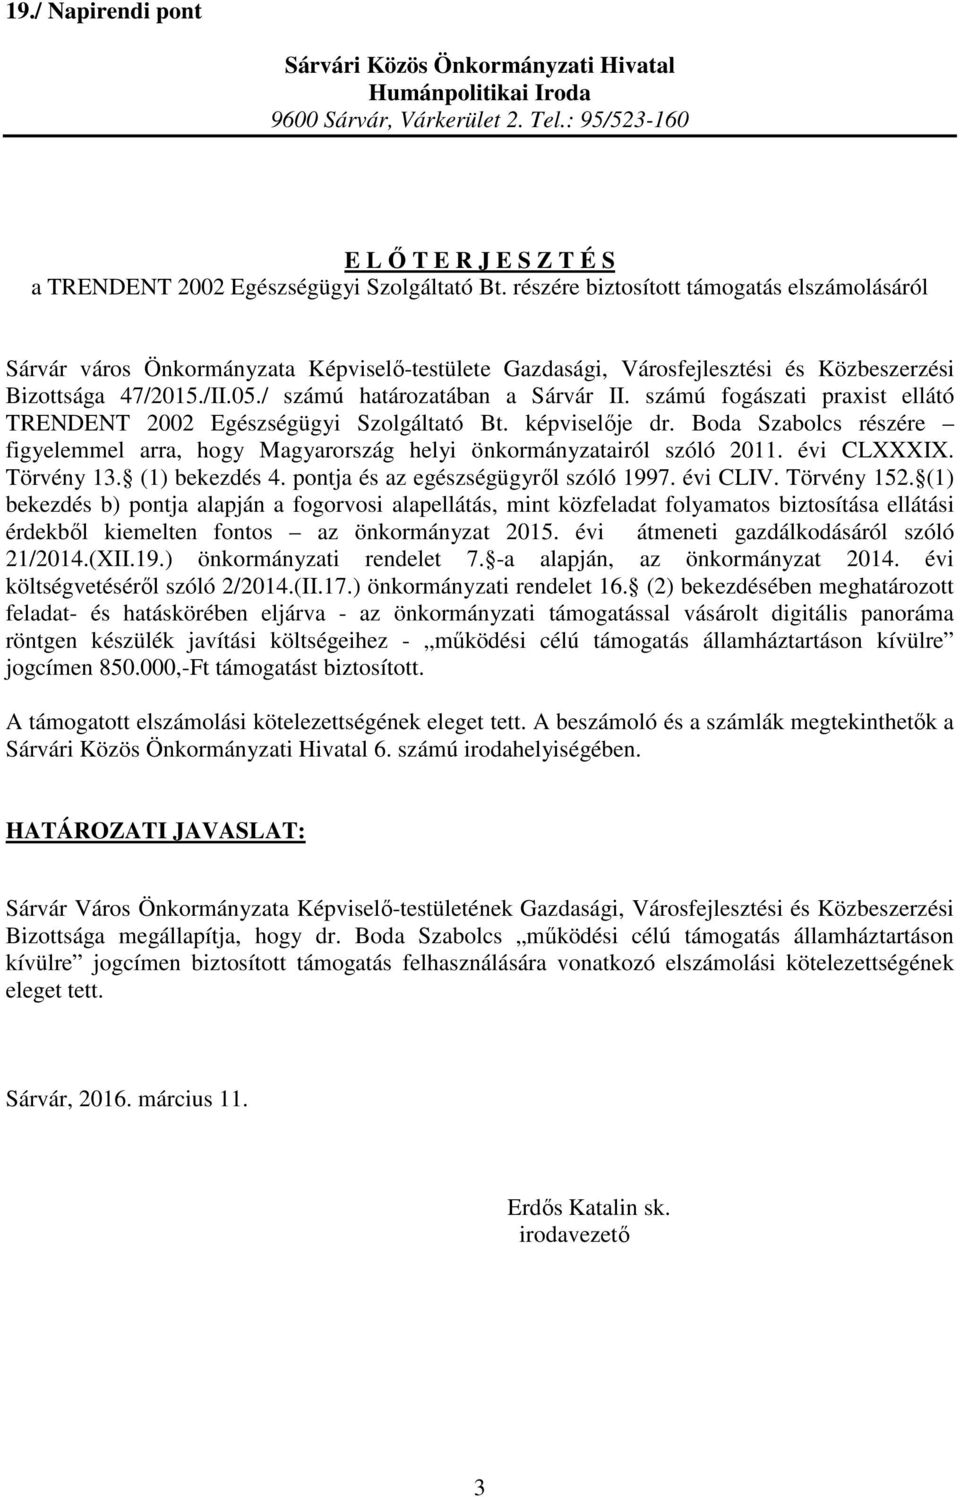 számú fogászati praxist ellátó TRENDENT 2002 Egészségügyi Szolgáltató Bt. képviselője dr. Boda Szabolcs részére figyelemmel arra, hogy Magyarország helyi önkormányzatairól szóló 2011. évi CLXXXIX.